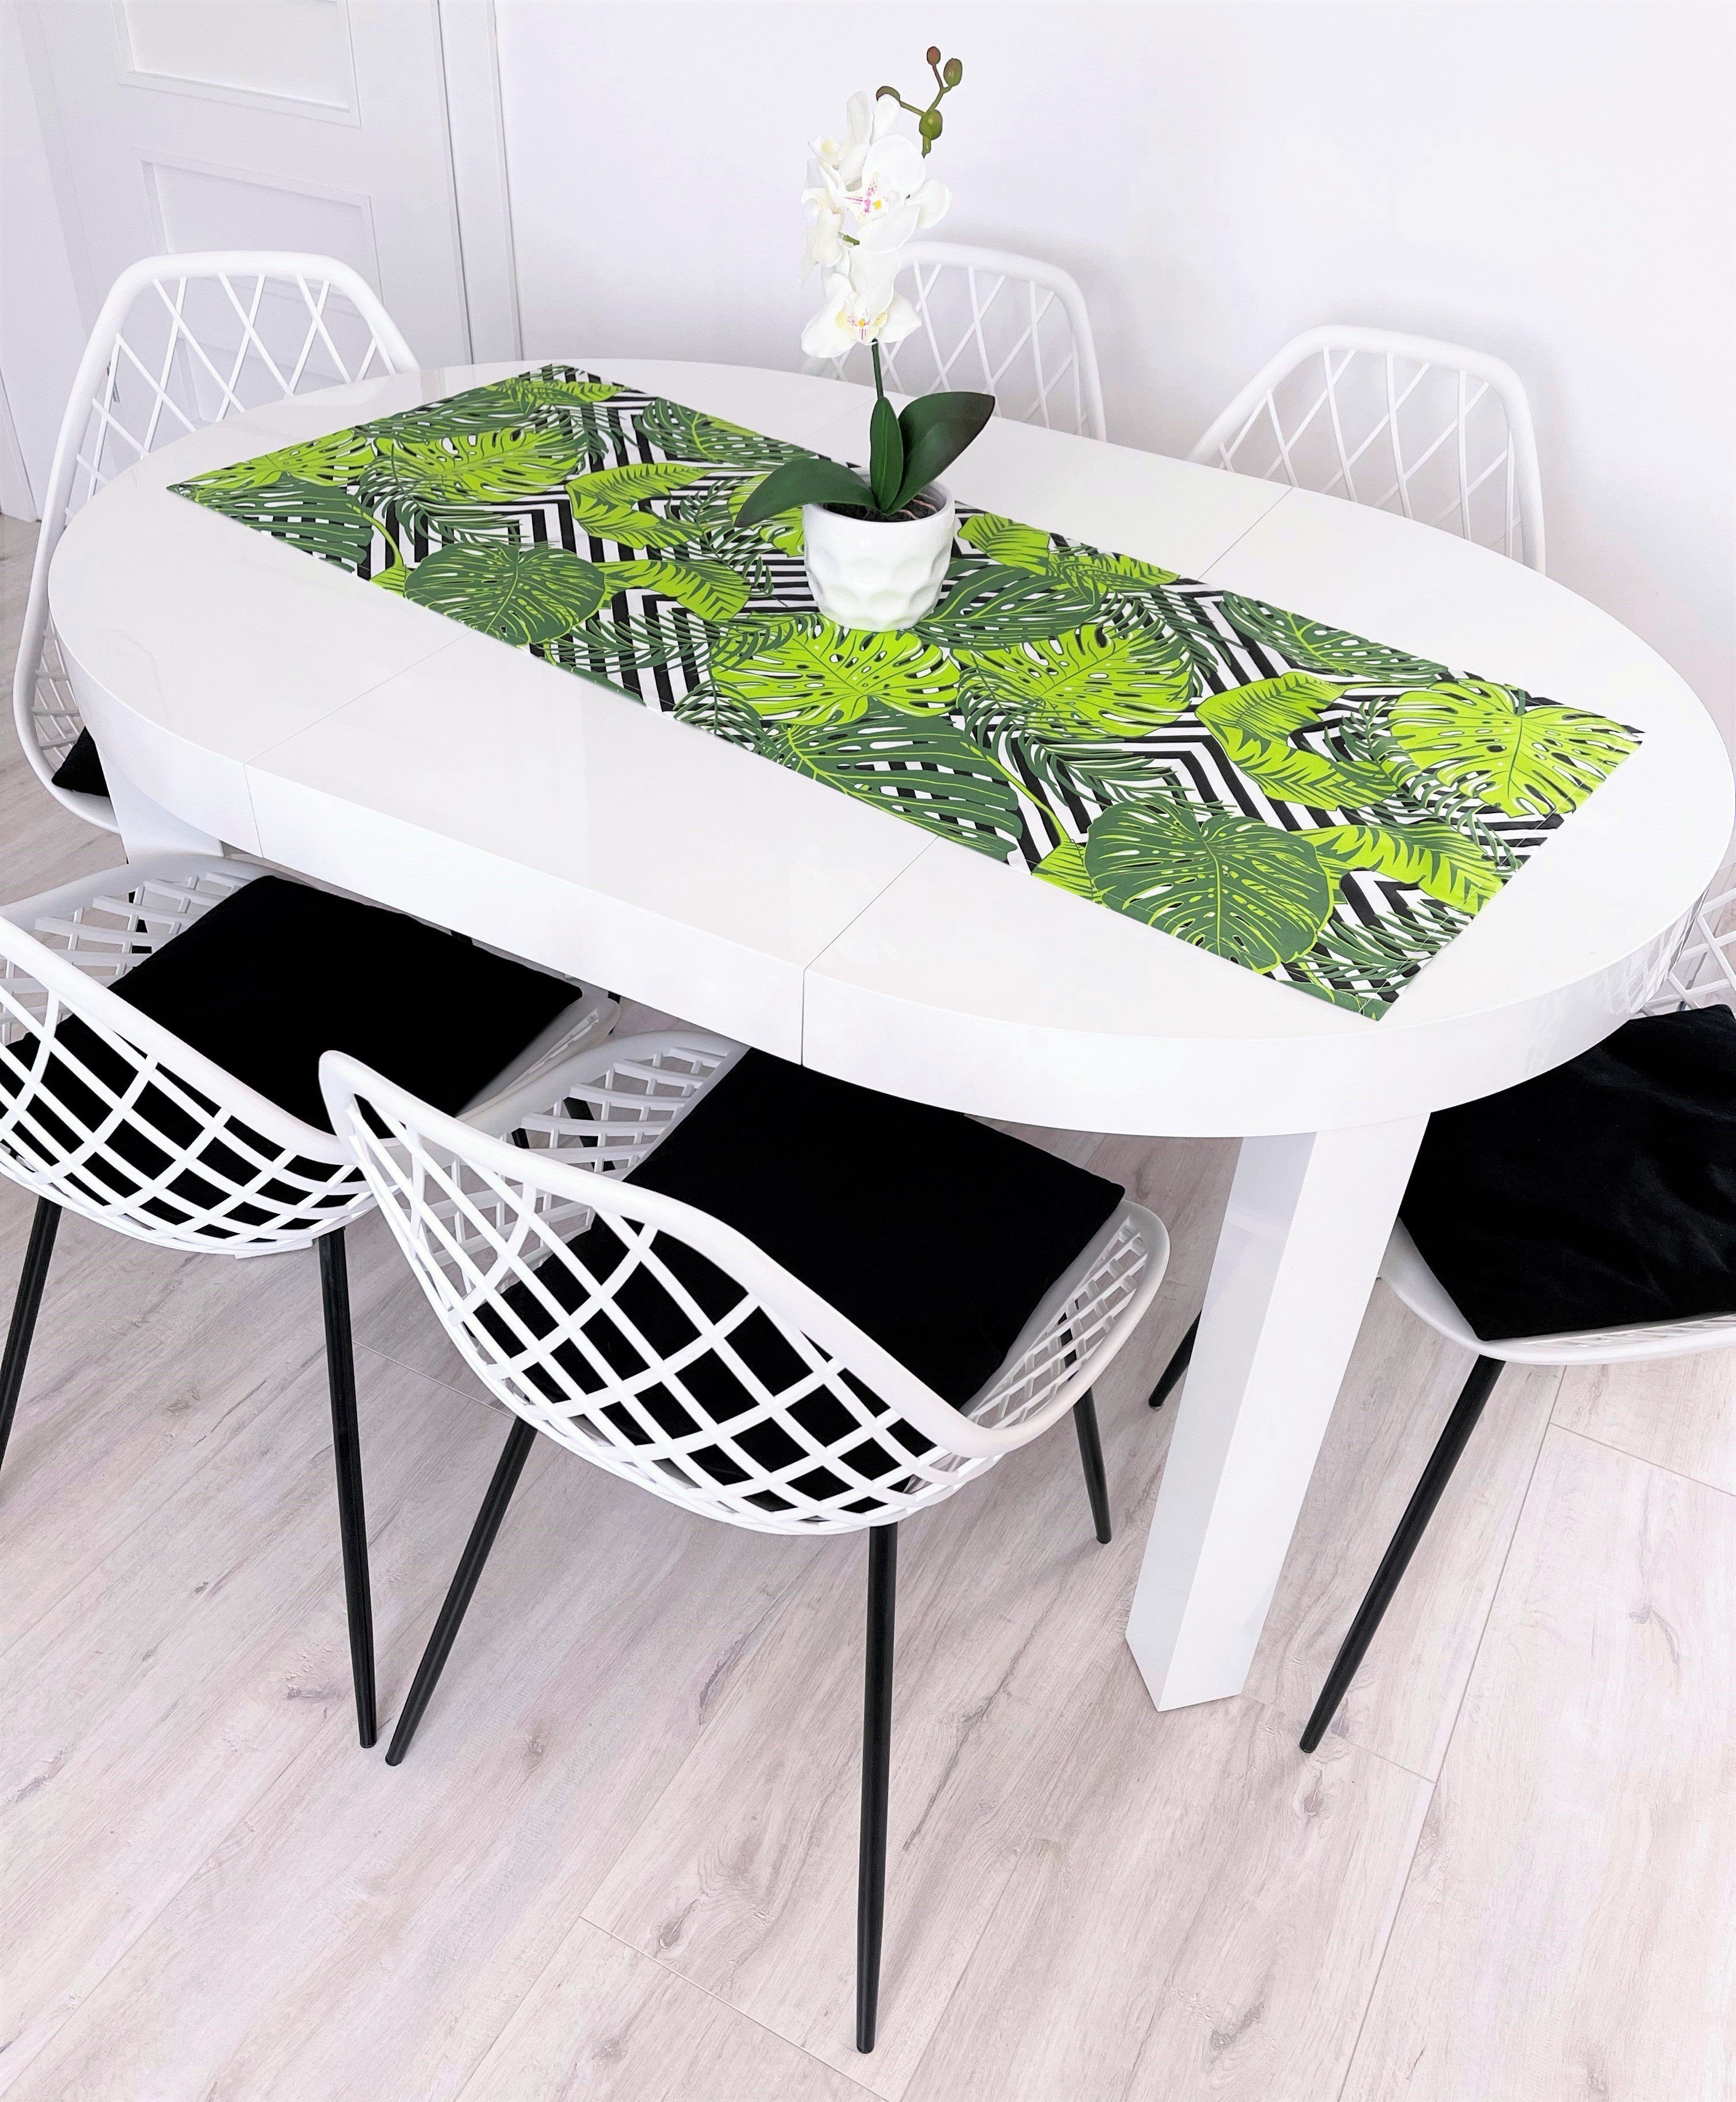 Maßen Tischlaeufer Baumwolle RoKo-Textilien Tischläufer gedeckter verfügbar Tischläufer in Tischdecke 18 100% Tisch